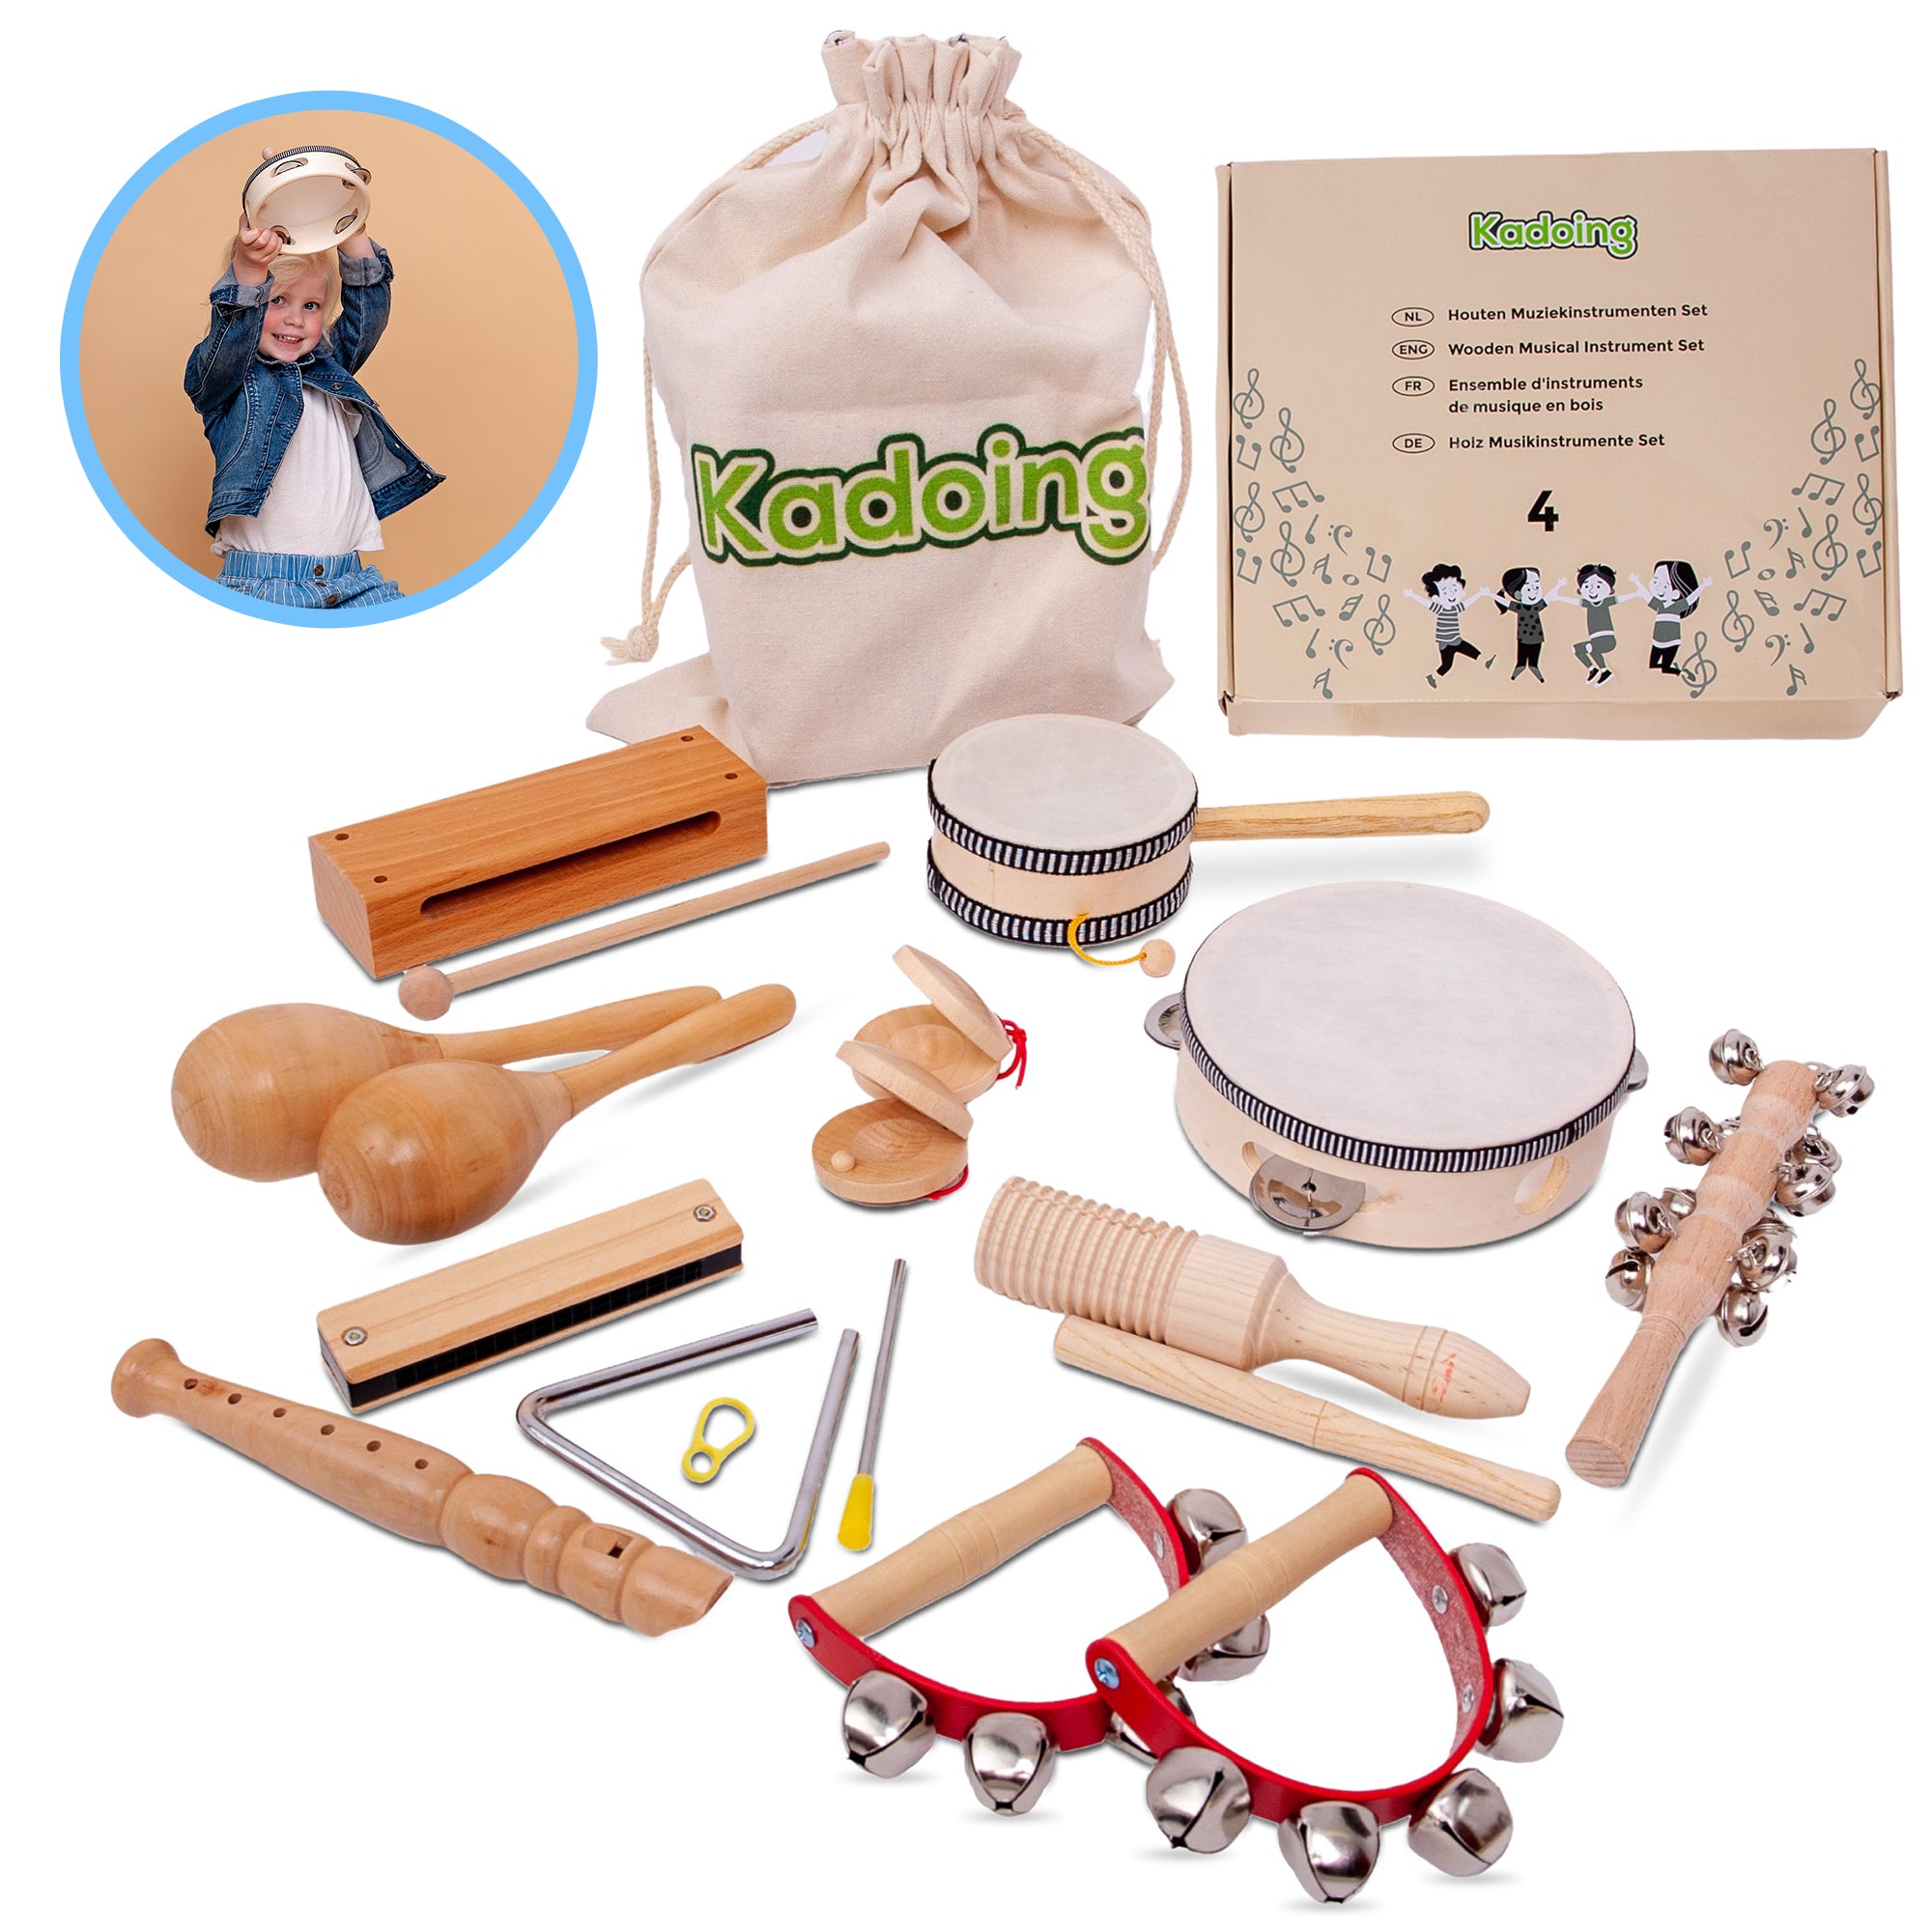 18-delt træmusikinstrumentsæt fra Kadoing. Det ultimative børnelegetøj